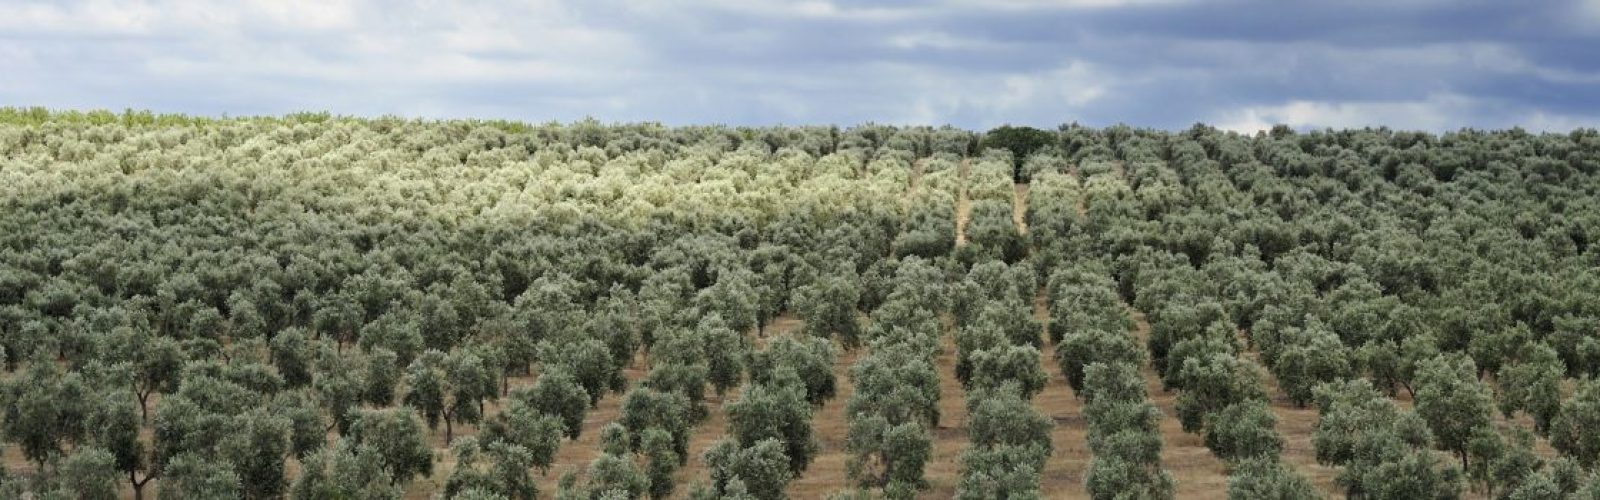 ¿Cuáles son los cultivos más rentables en España? - AGR